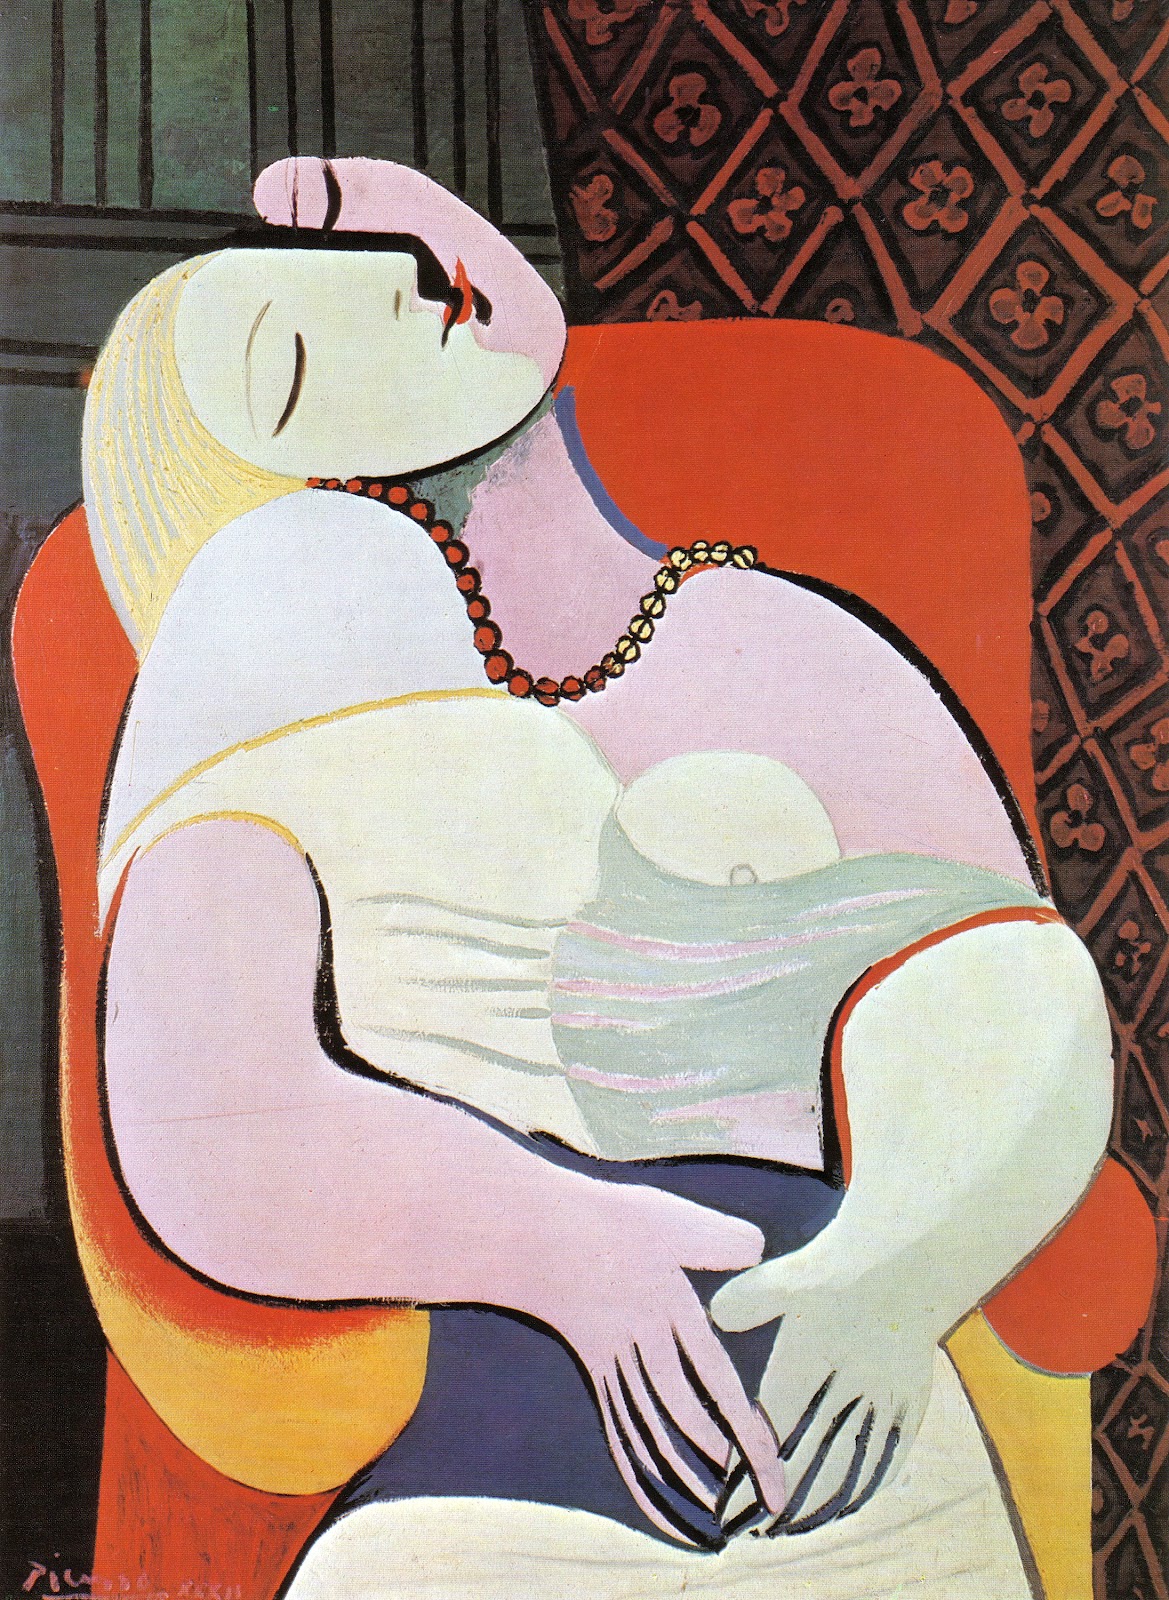 La Rêve (O Sonho) by Pablo Picasso - 1932 - 130 cm × 97 cm coleção privada